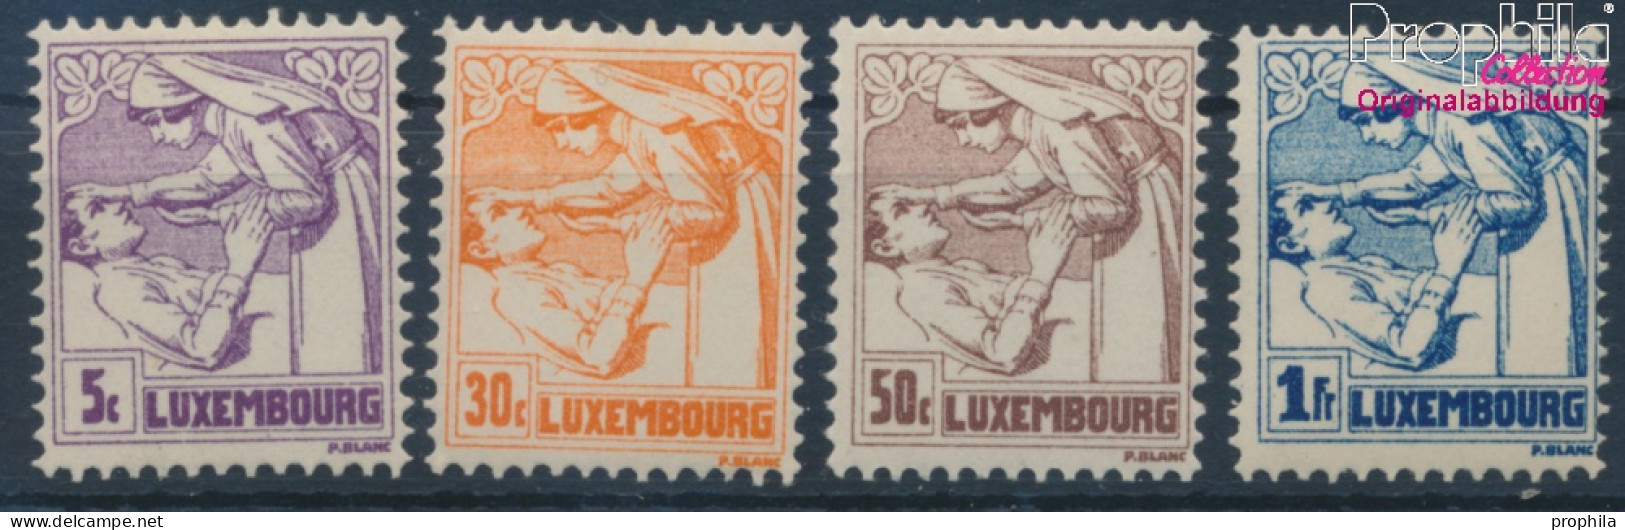 Luxemburg 157-160 (kompl.Ausg.) Postfrisch 1925 Tuberkulose (10363339 - Unused Stamps